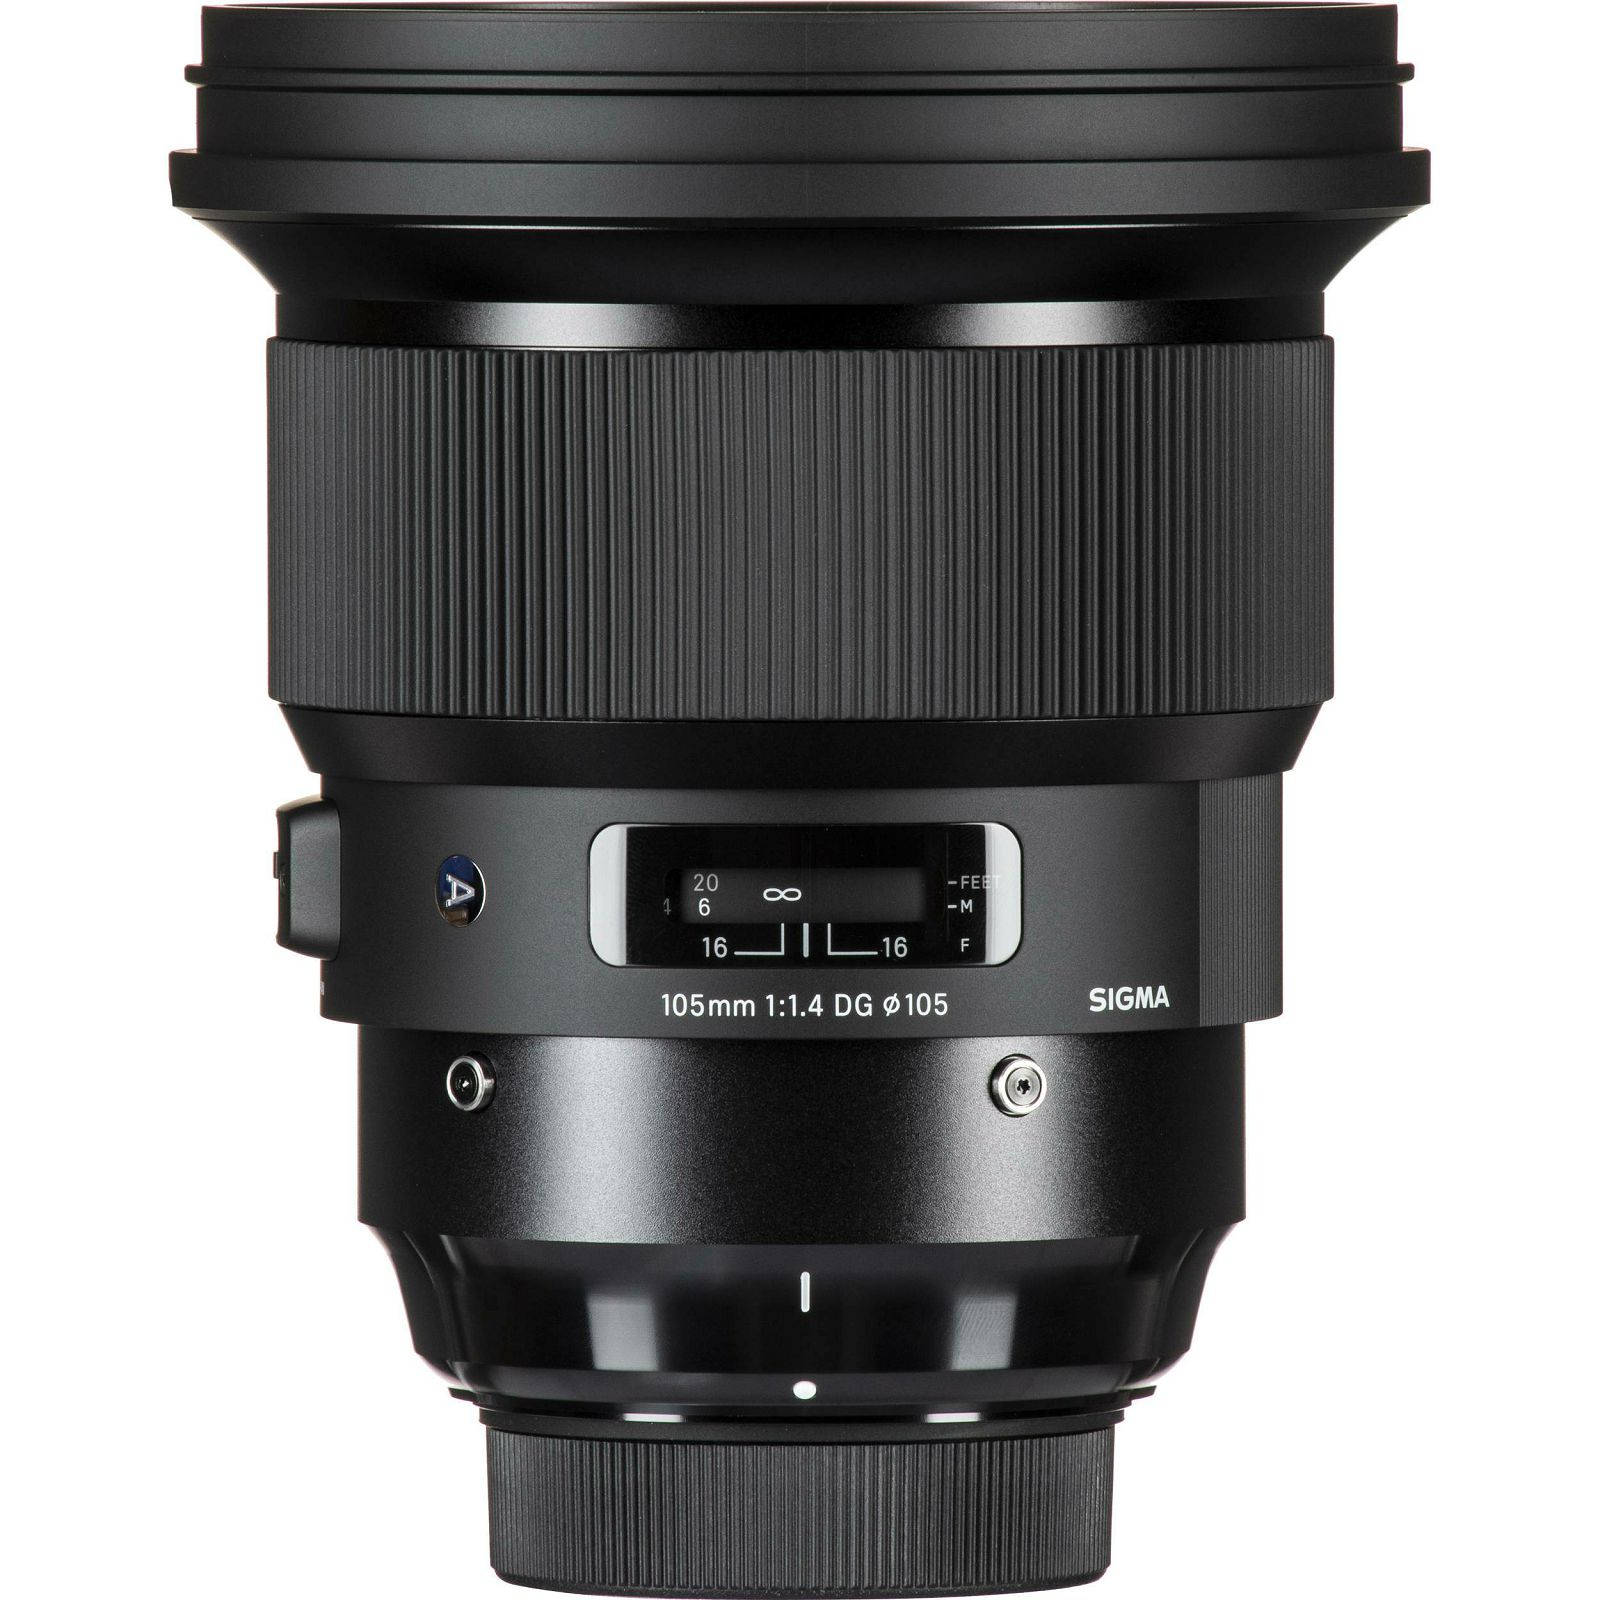 Sigma 105mm f/1.4 DG HSM ART objektiv za Nikon FX